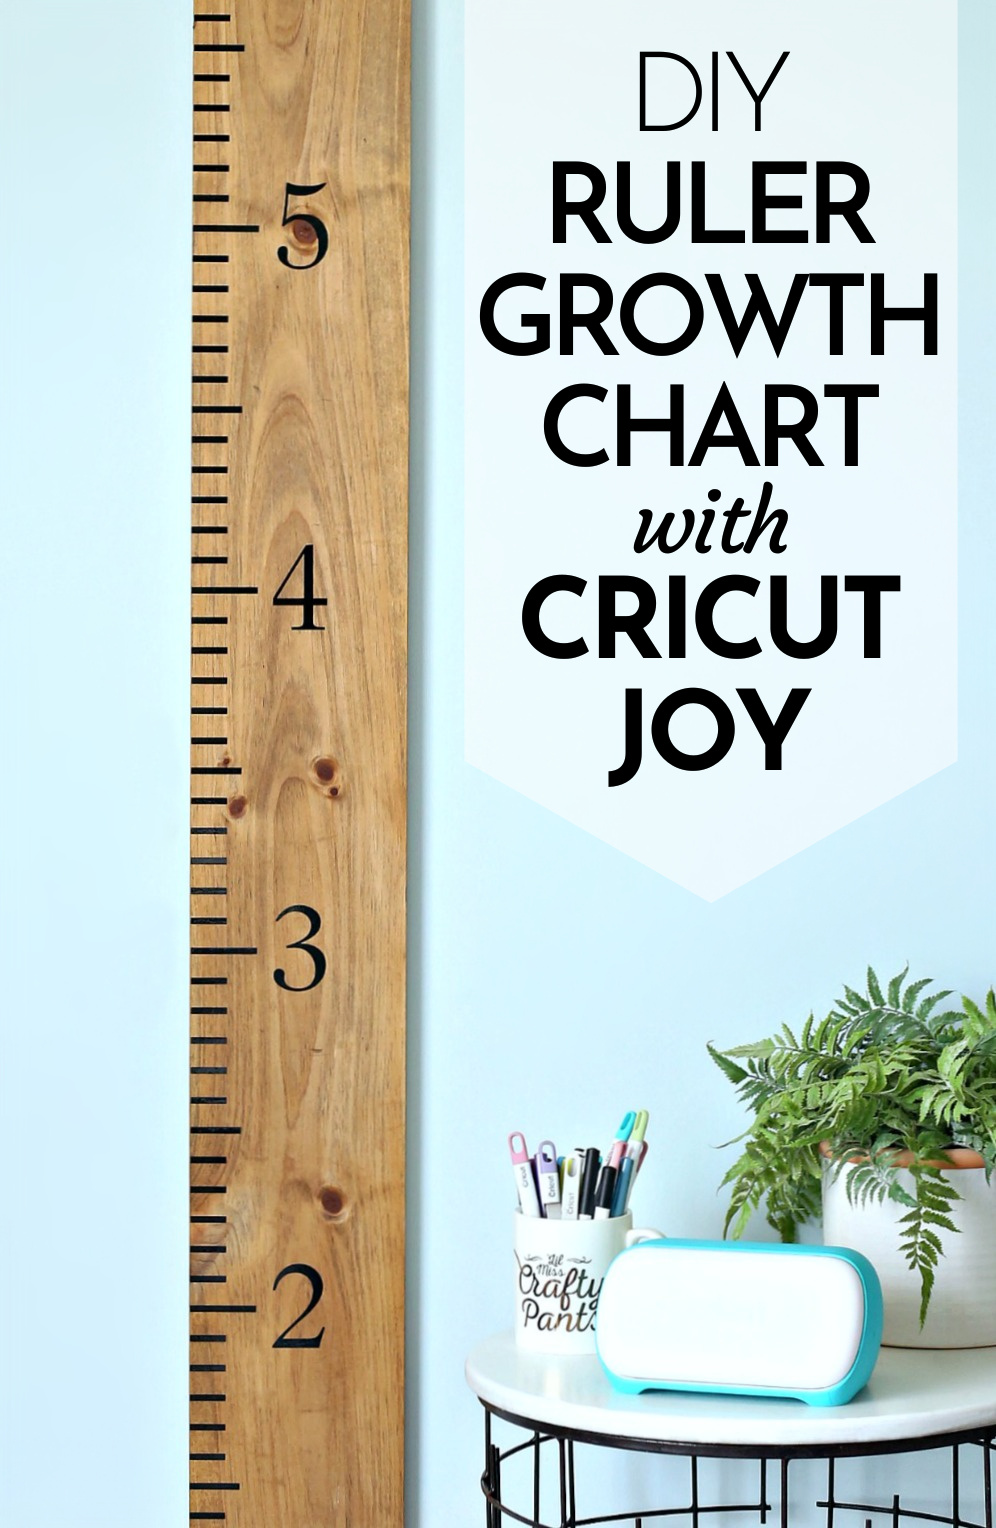 DIY Ruler Growth Chart with Cricut Joy